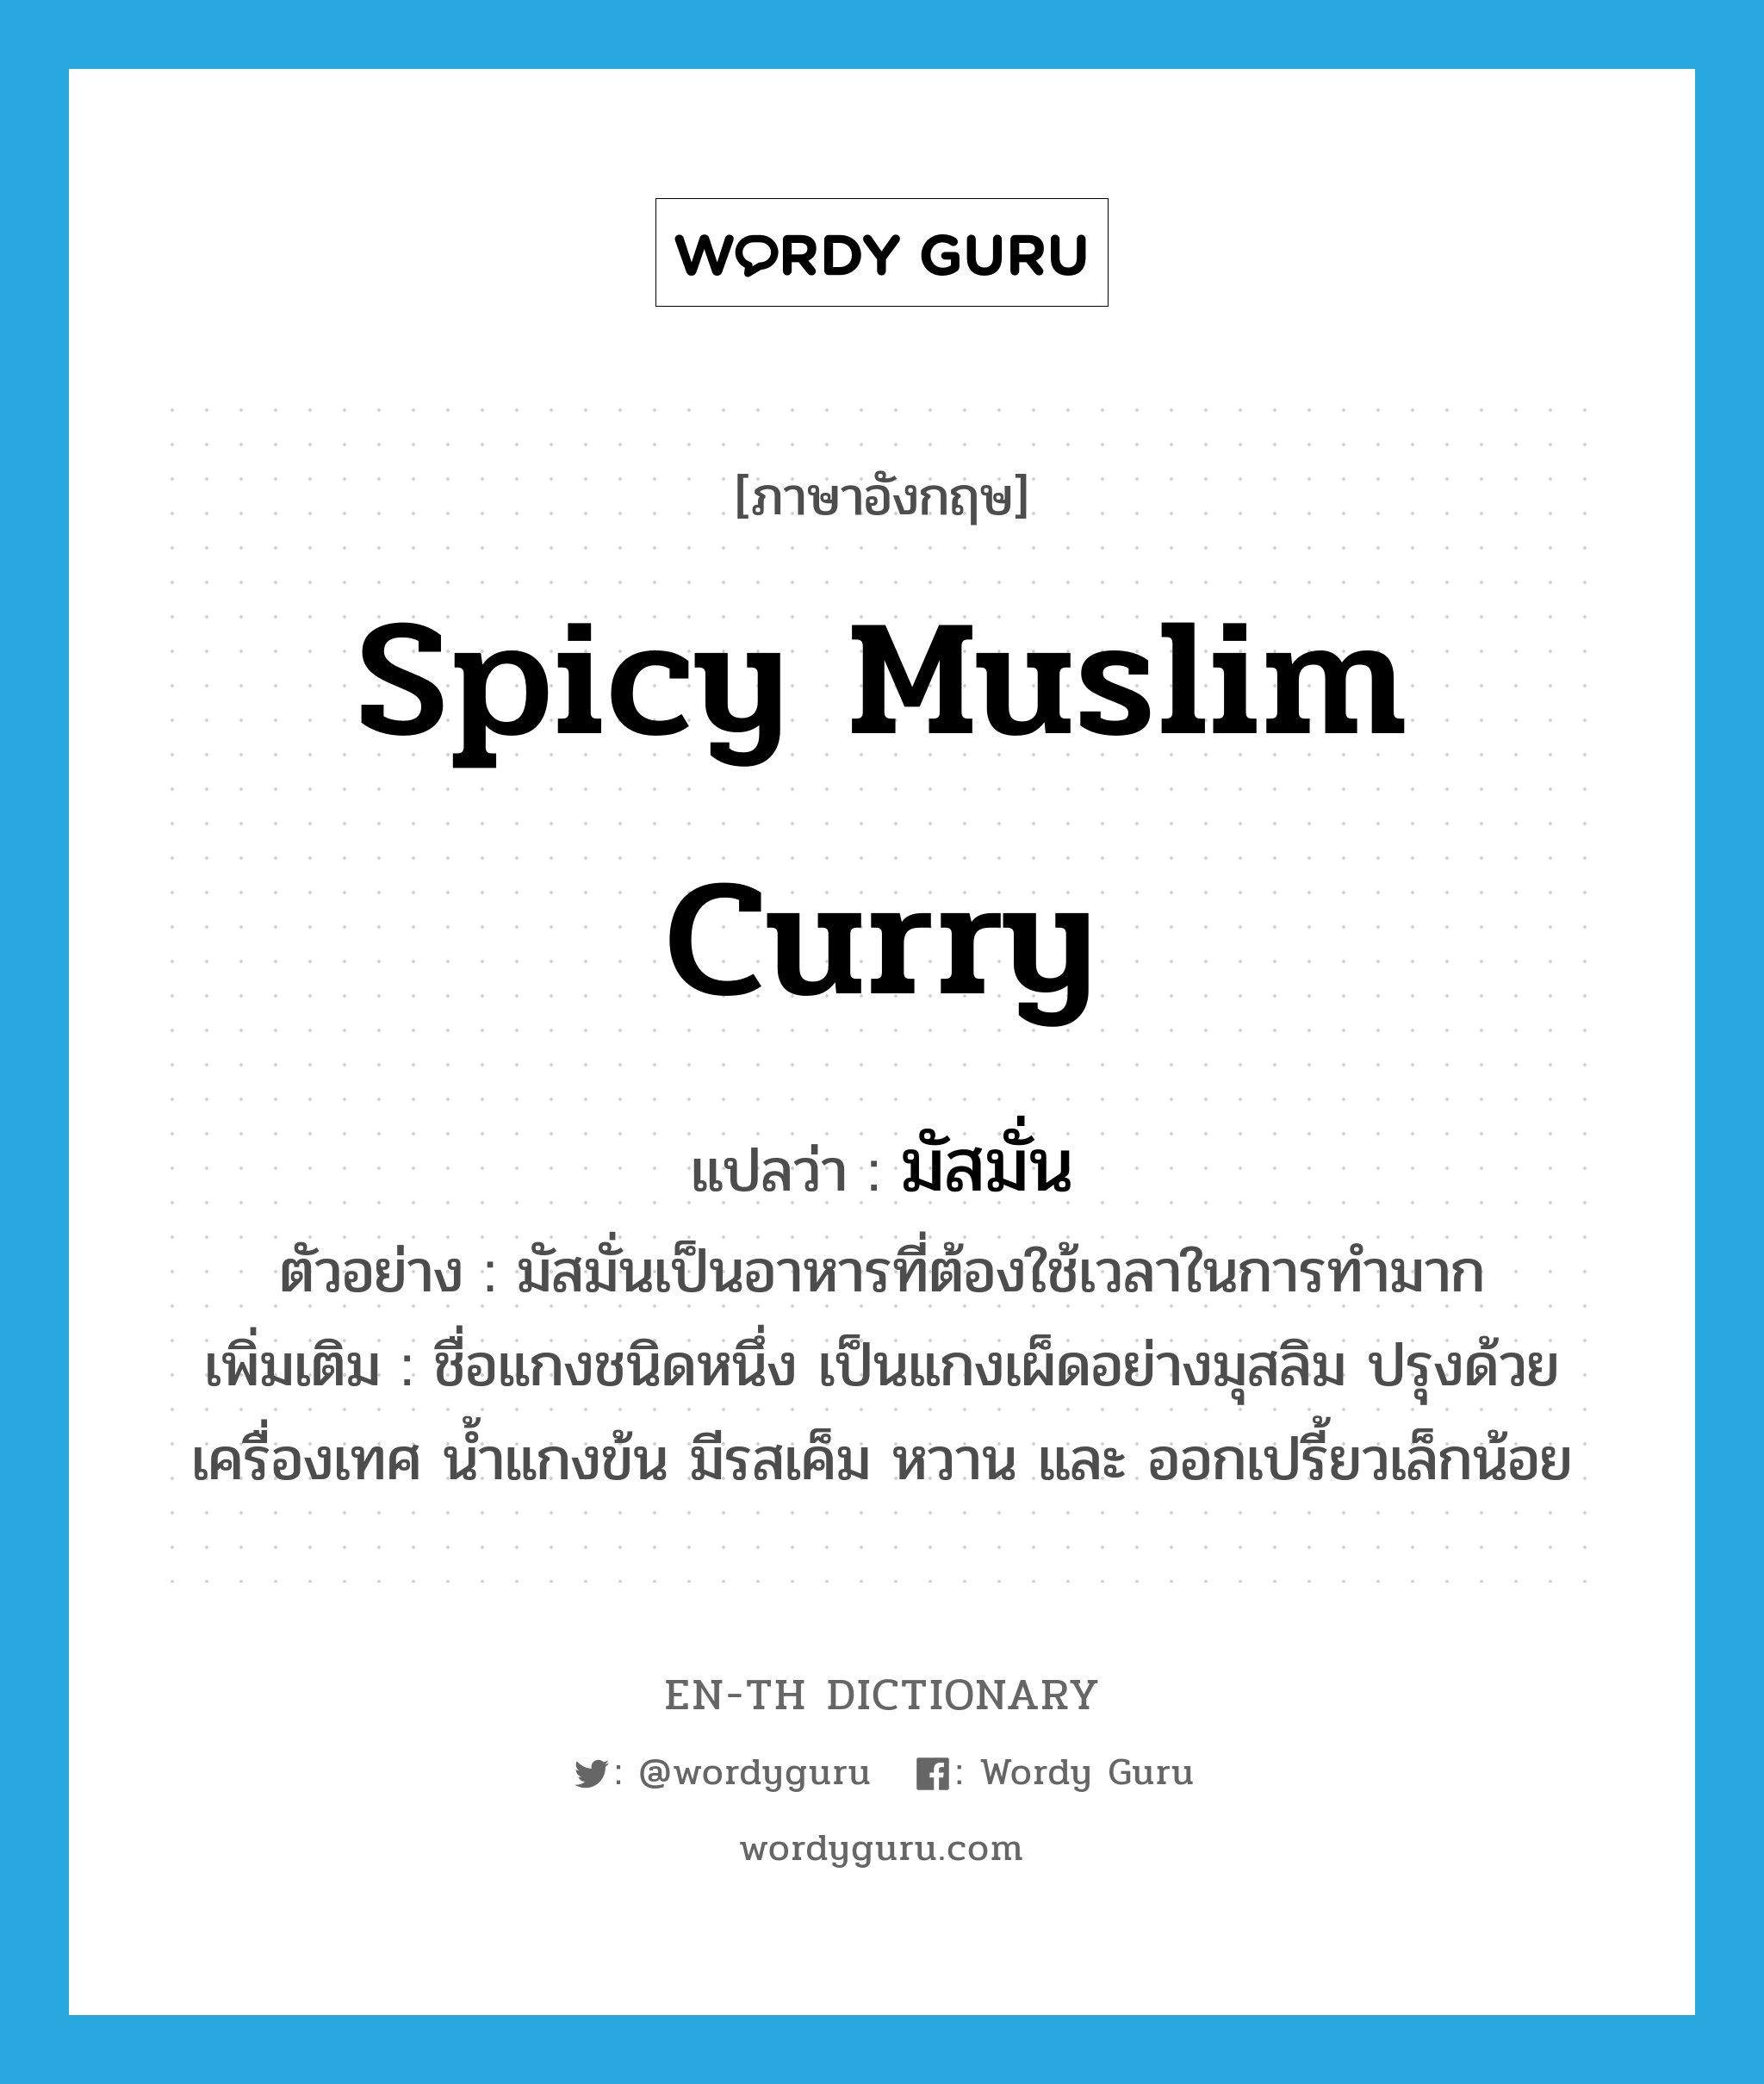 spicy Muslim curry แปลว่า?, คำศัพท์ภาษาอังกฤษ spicy Muslim curry แปลว่า มัสมั่น ประเภท N ตัวอย่าง มัสมั่นเป็นอาหารที่ต้องใช้เวลาในการทำมาก เพิ่มเติม ชื่อแกงชนิดหนึ่ง เป็นแกงเผ็ดอย่างมุสลิม ปรุงด้วยเครื่องเทศ น้ำแกงข้น มีรสเค็ม หวาน และ ออกเปรี้ยวเล็กน้อย หมวด N